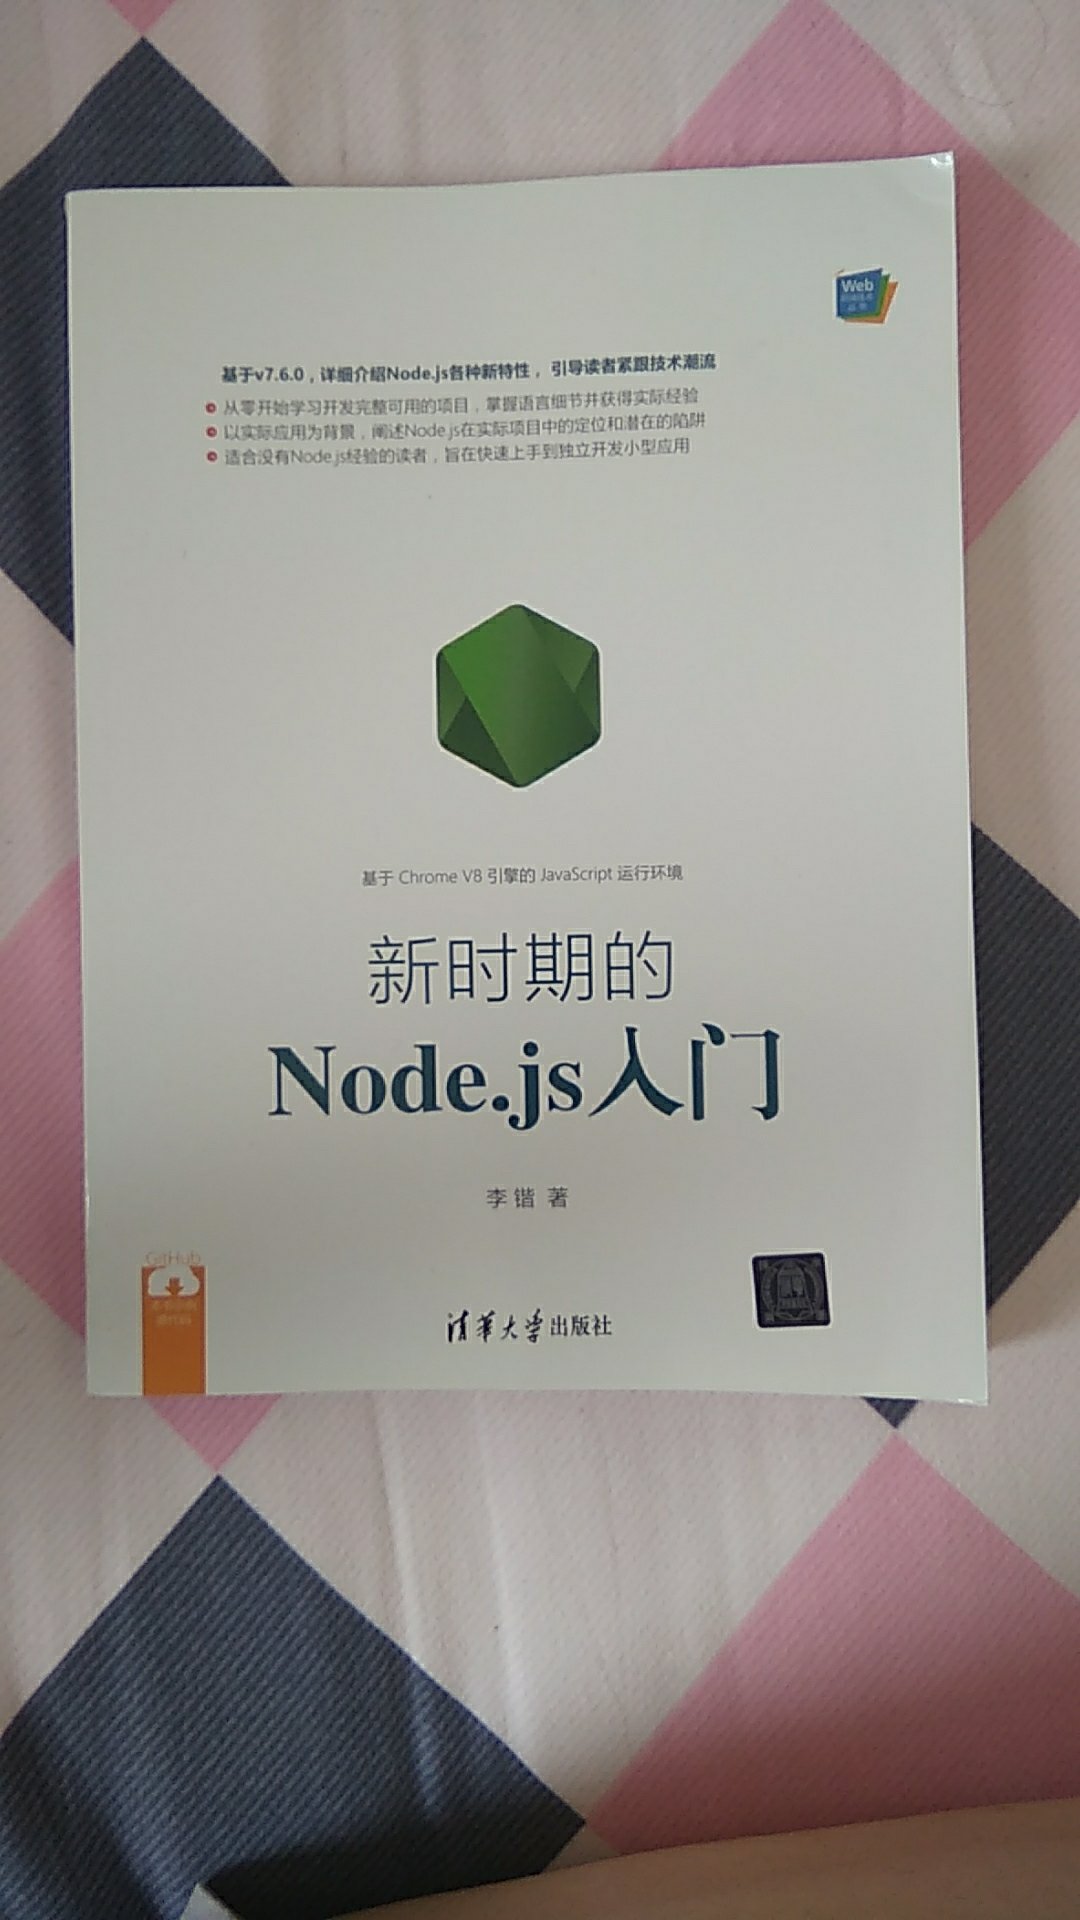 node.js现在是新兴热门技术，作为前端必须学习了解，这本书知识比较新，符合当前的学习，好评！